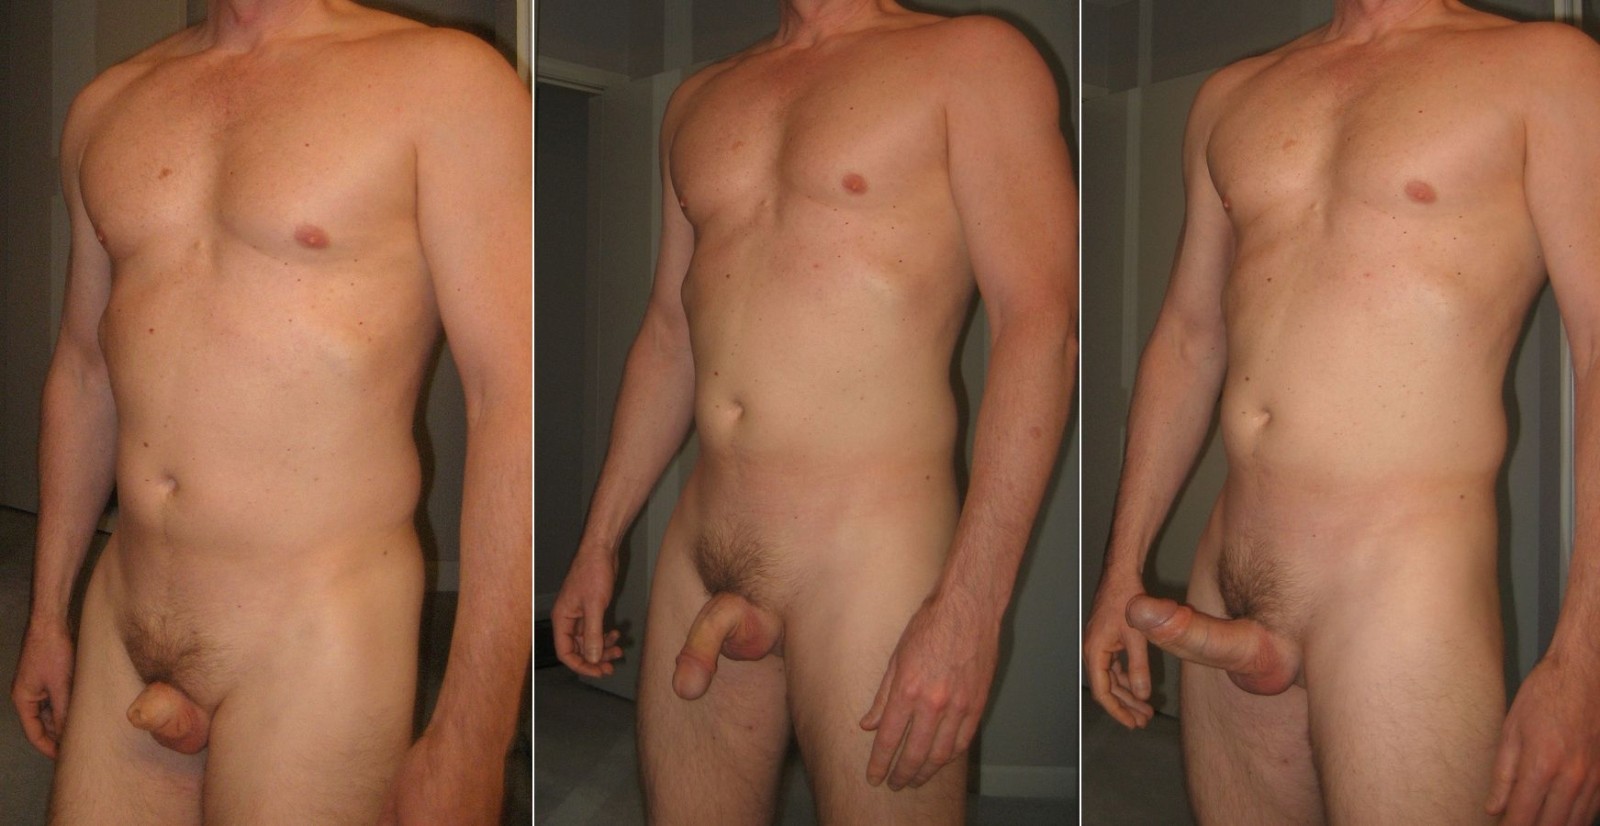 Men showing size of dicks